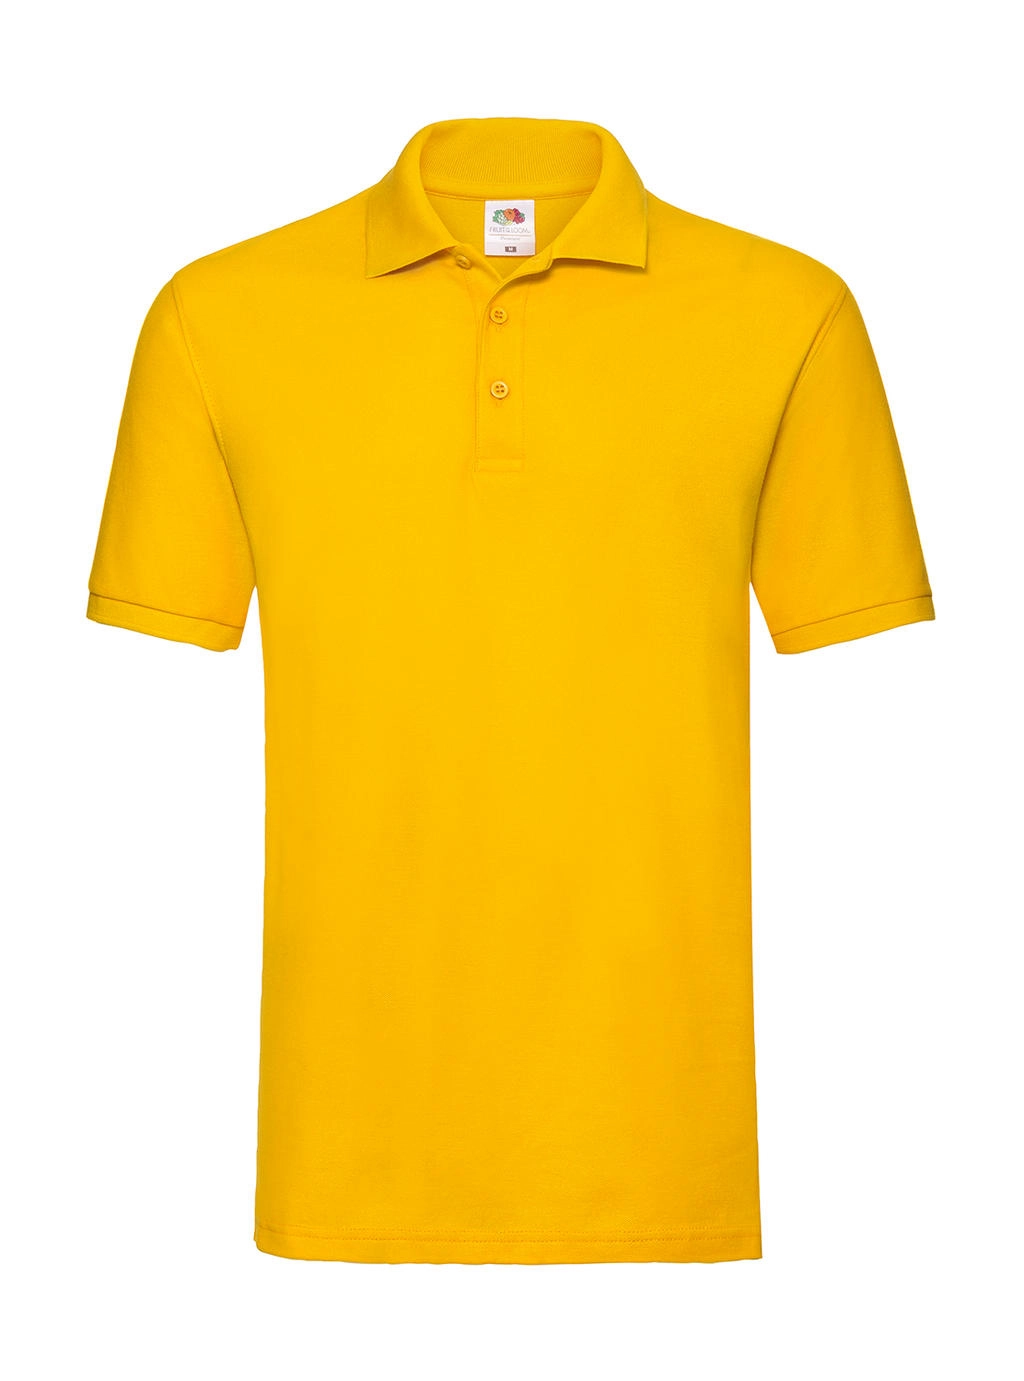 Premium Polo zum Besticken und Bedrucken in der Farbe Sunflower mit Ihren Logo, Schriftzug oder Motiv.